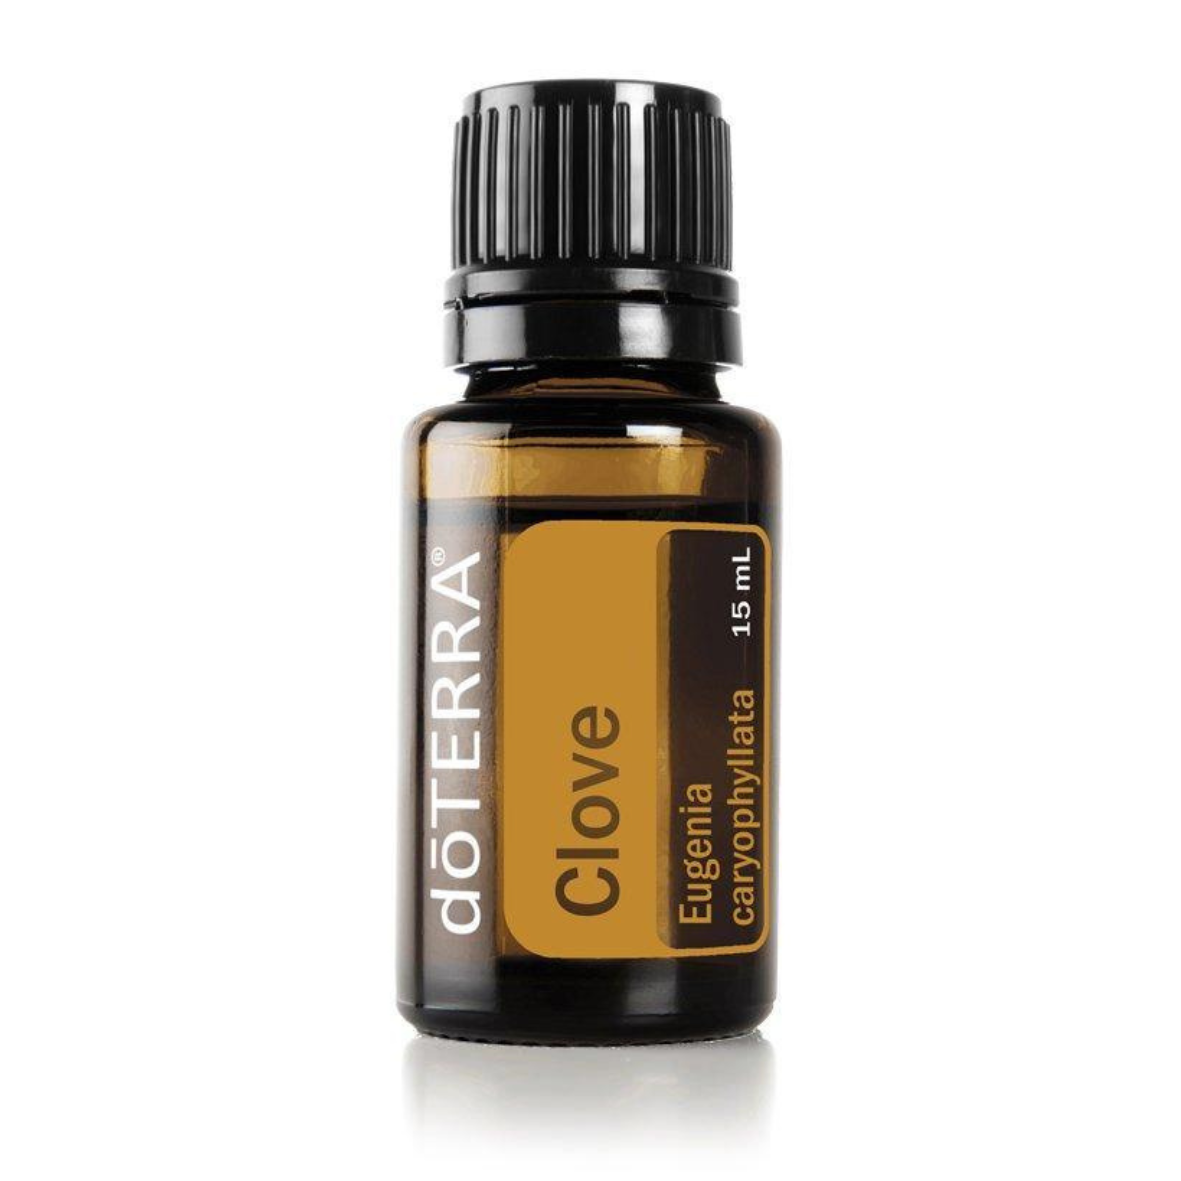 Clove Aromatherapy Oil Doterra